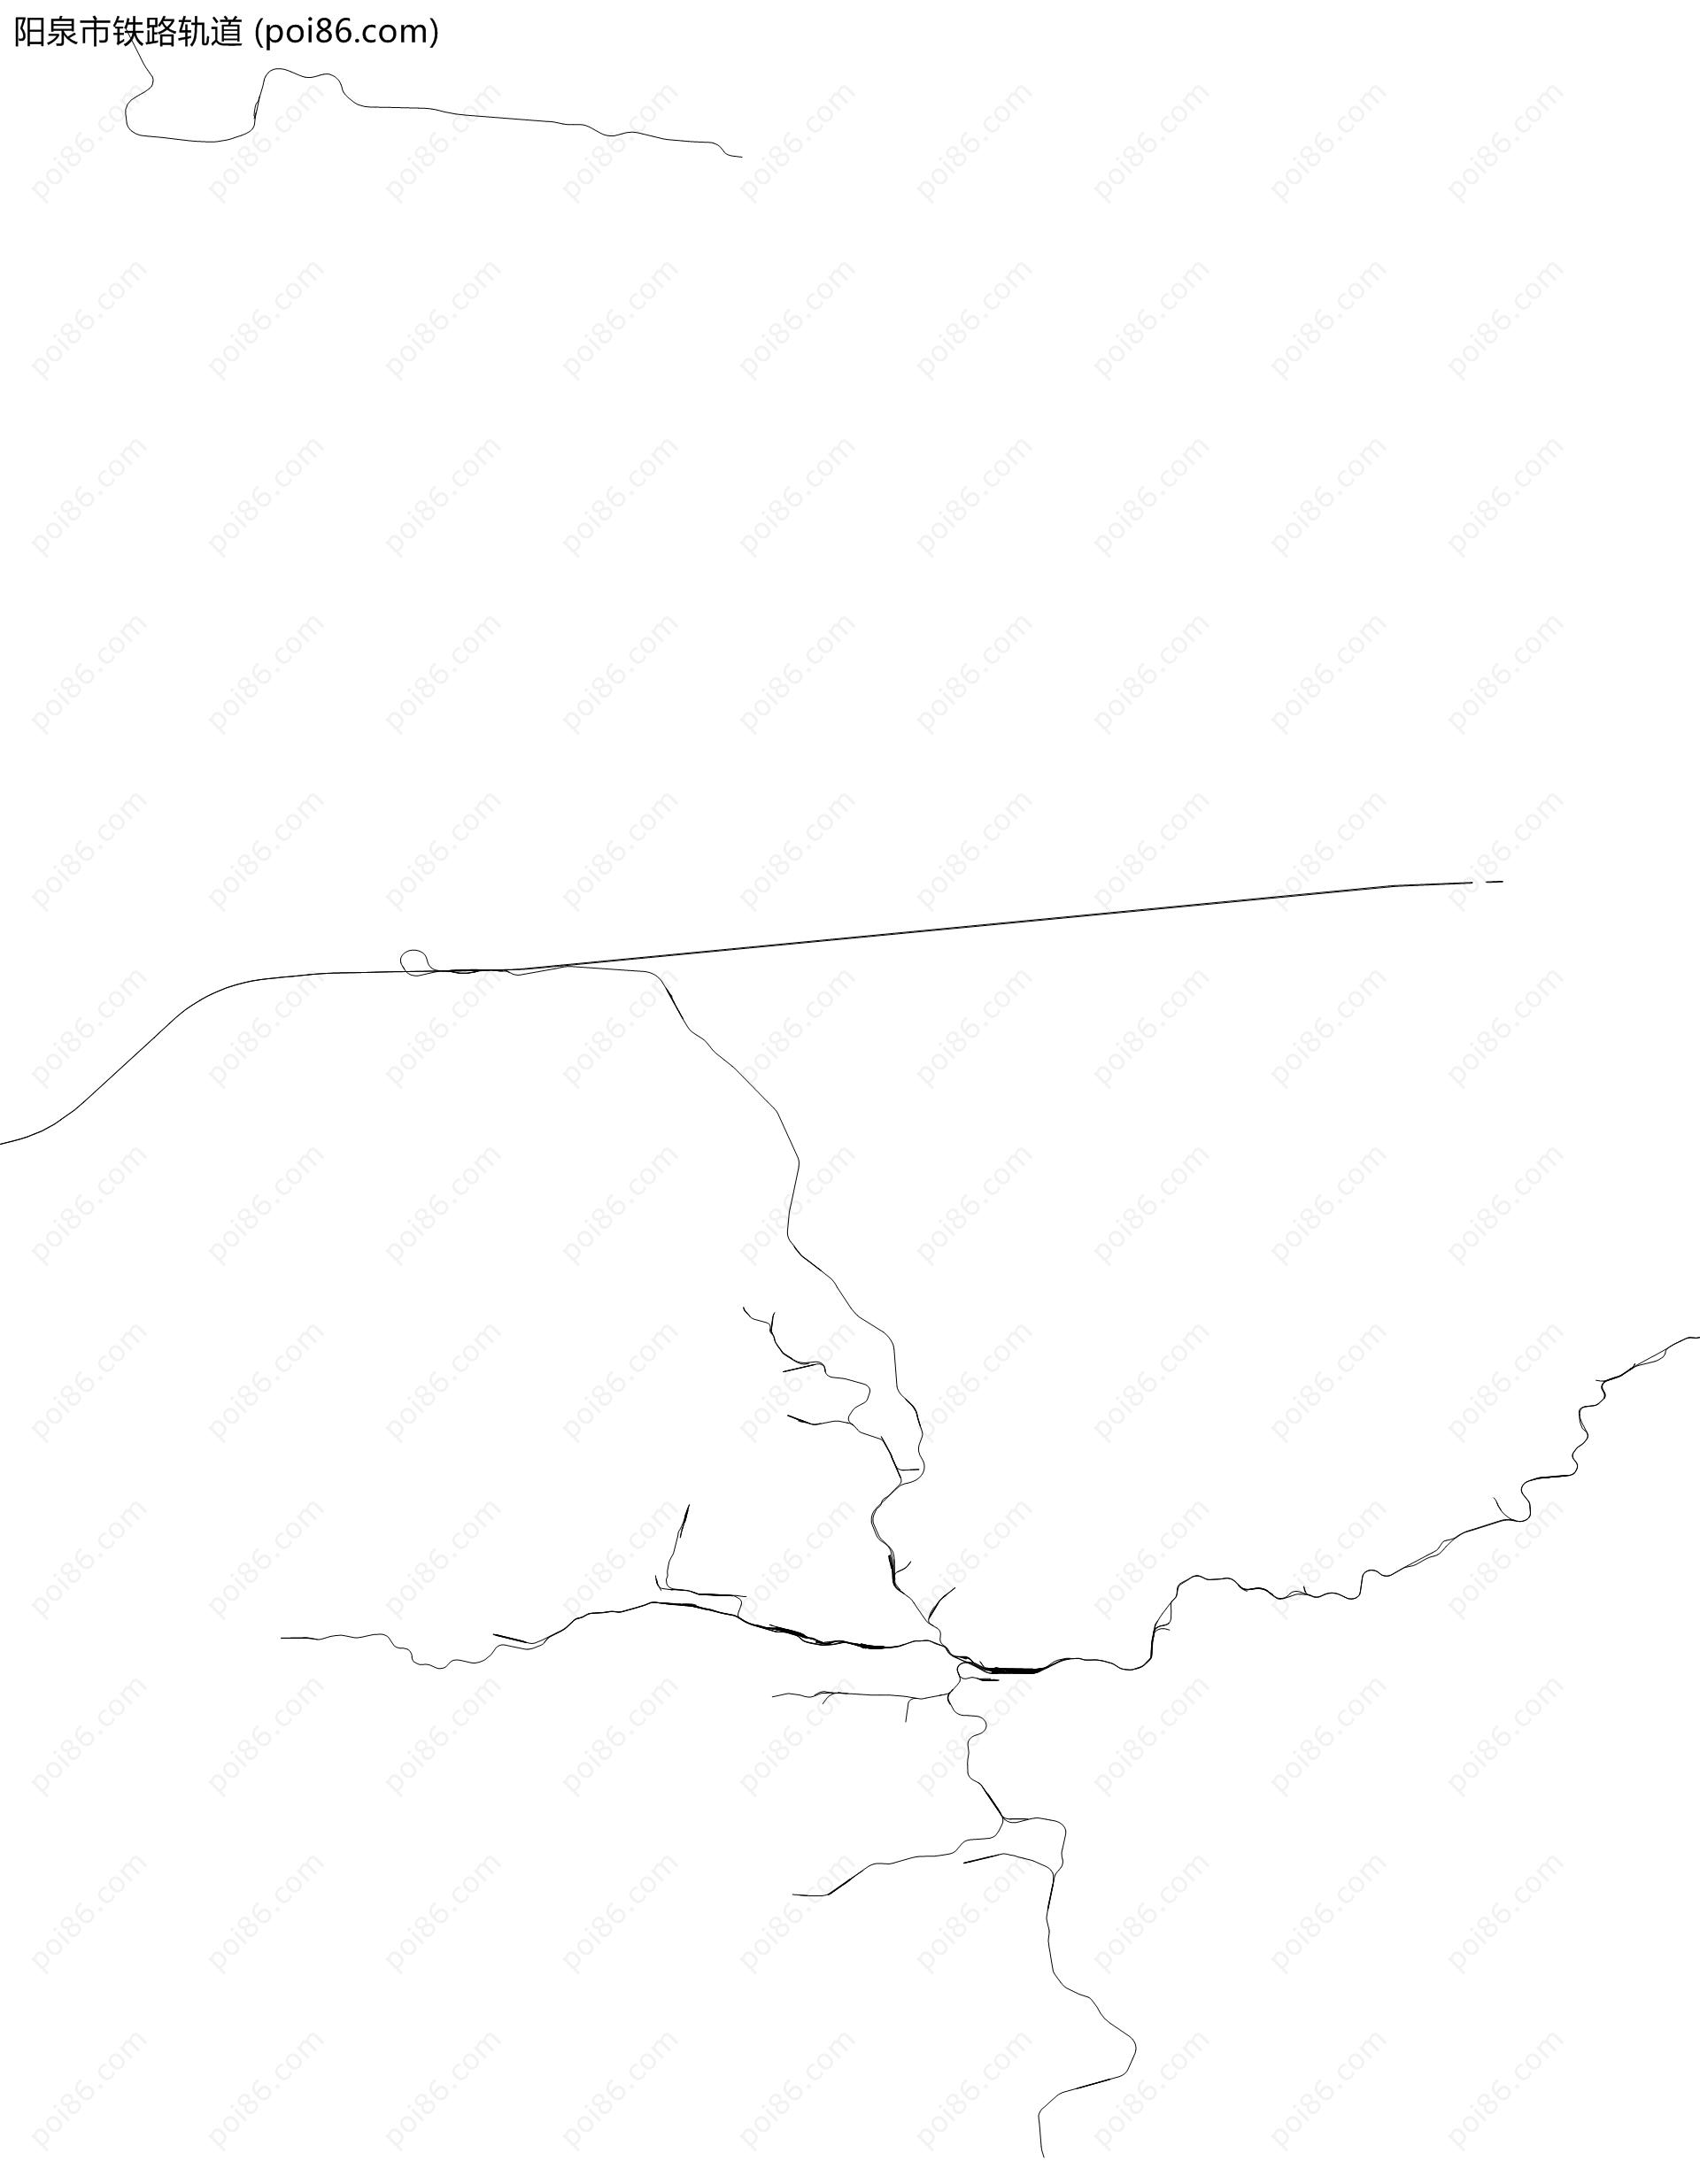 阳泉市铁路轨道地图